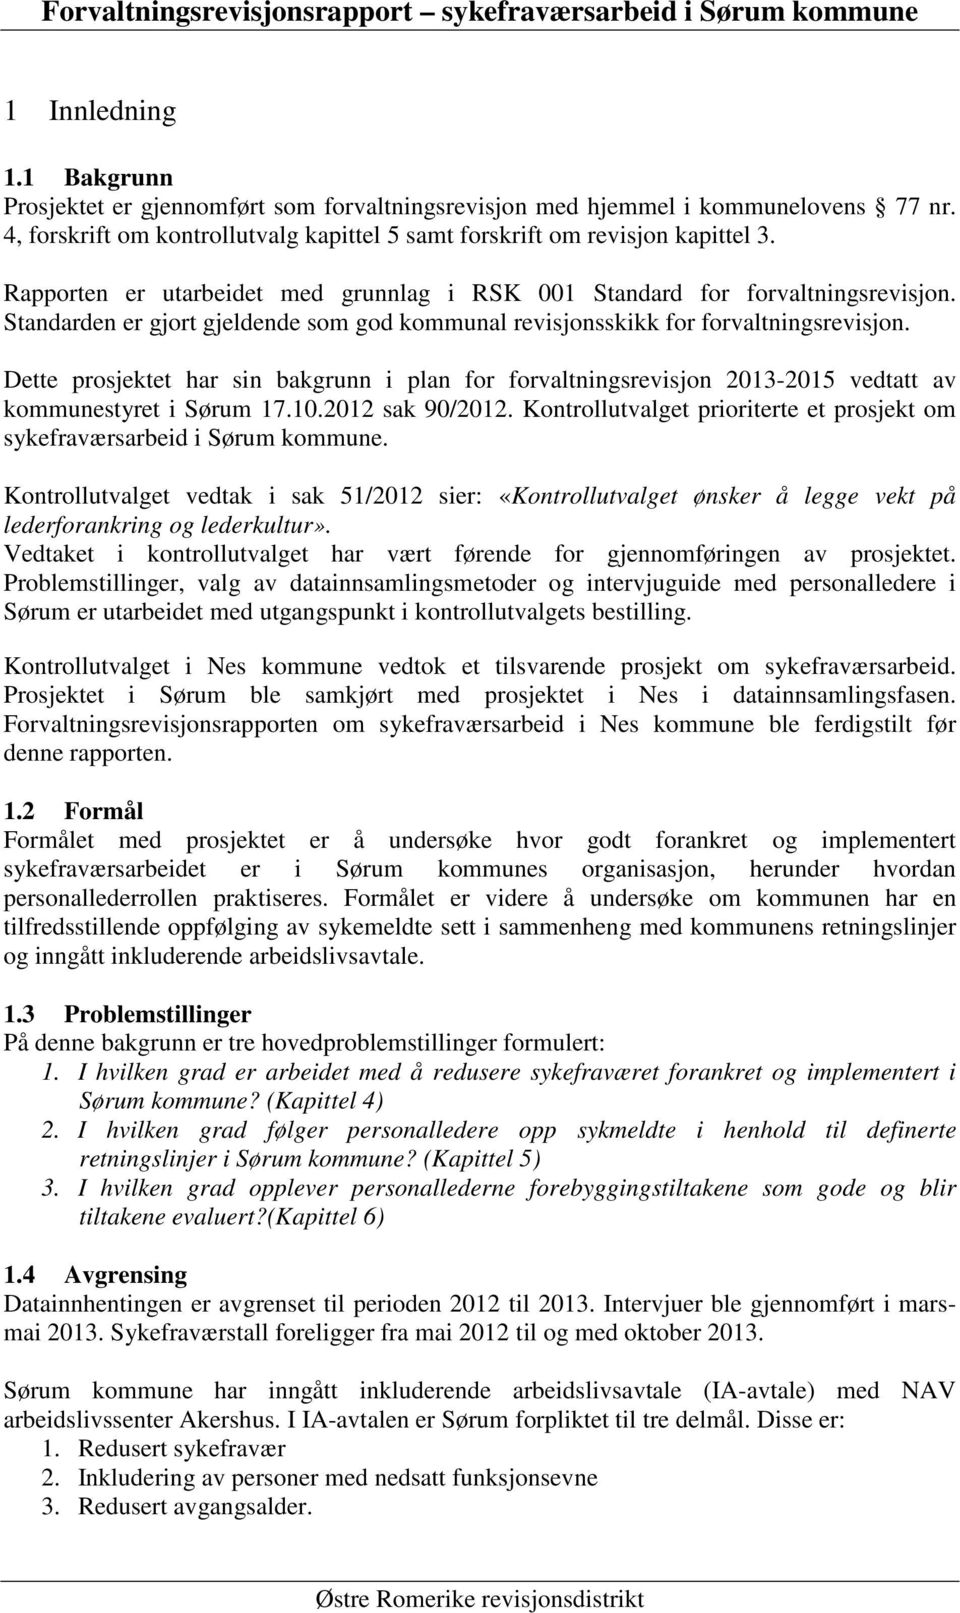 Dette prosjektet har sin bakgrunn i plan for forvaltningsrevisjon 2013-2015 vedtatt av kommunestyret i Sørum 17.10.2012 sak 90/2012.